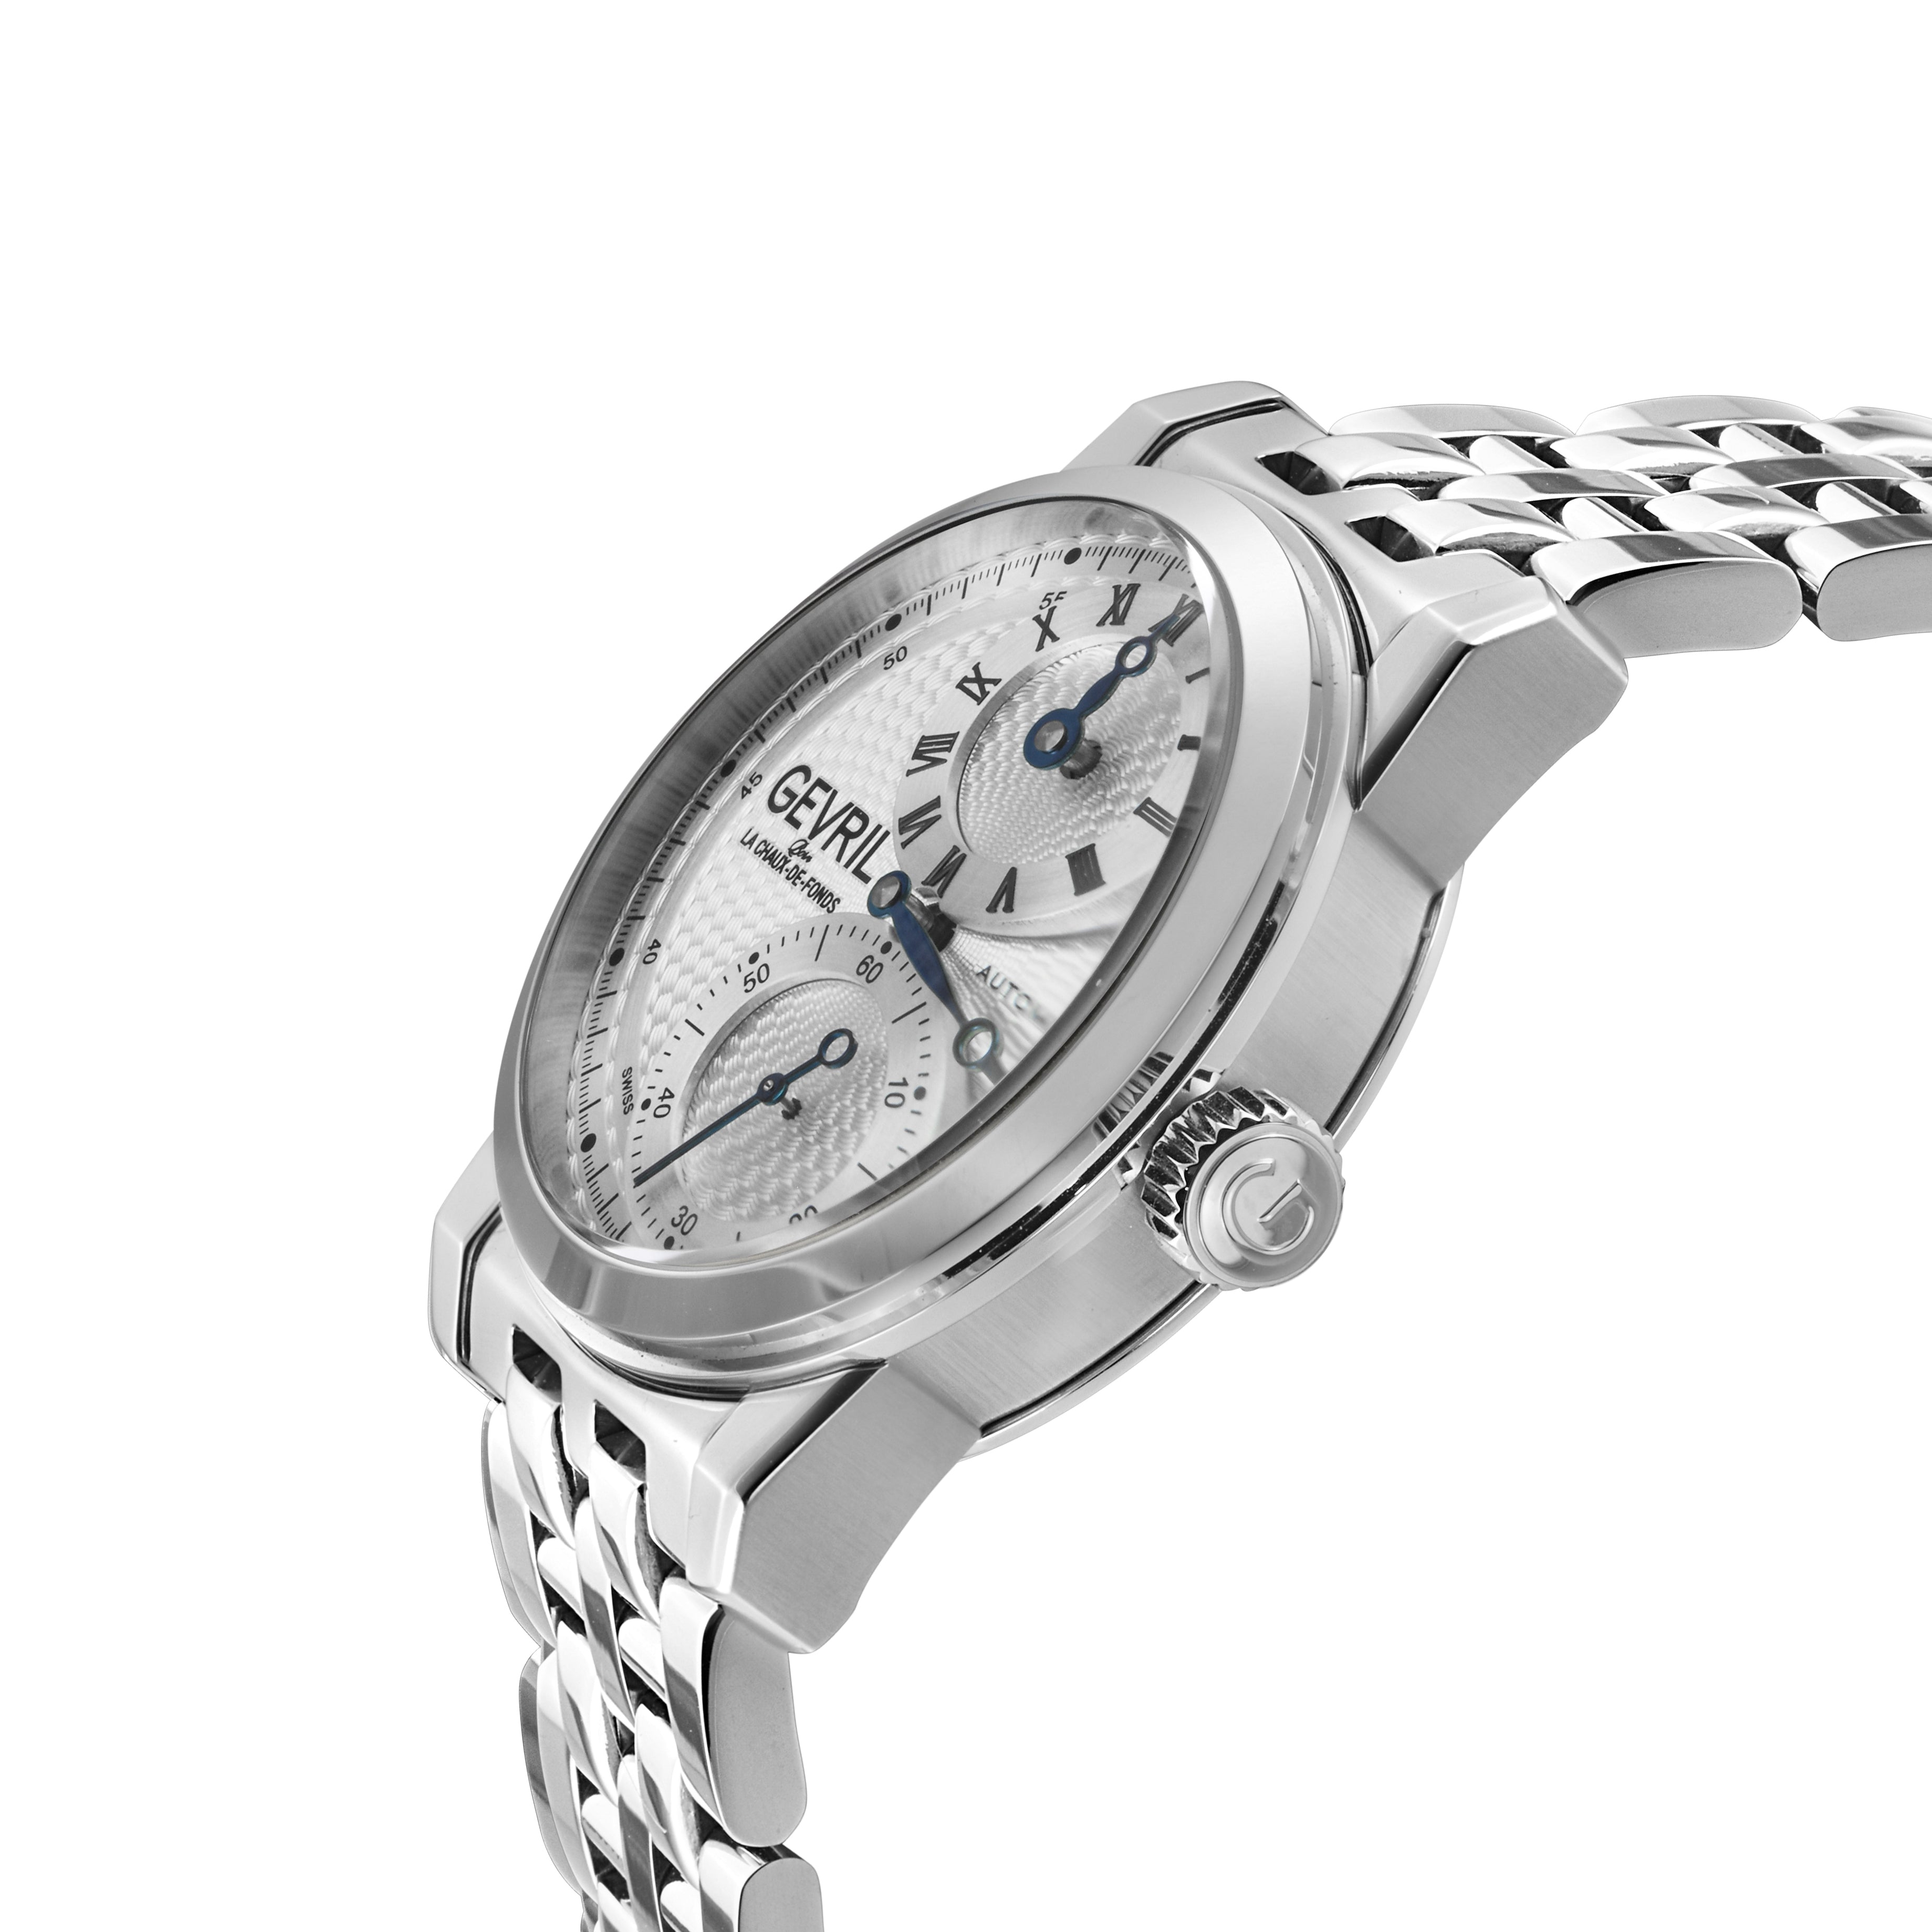 正規代理店 GEVRIL 自動巻腕時計 メンズ 2503 腕時計(アナログ) - www ...